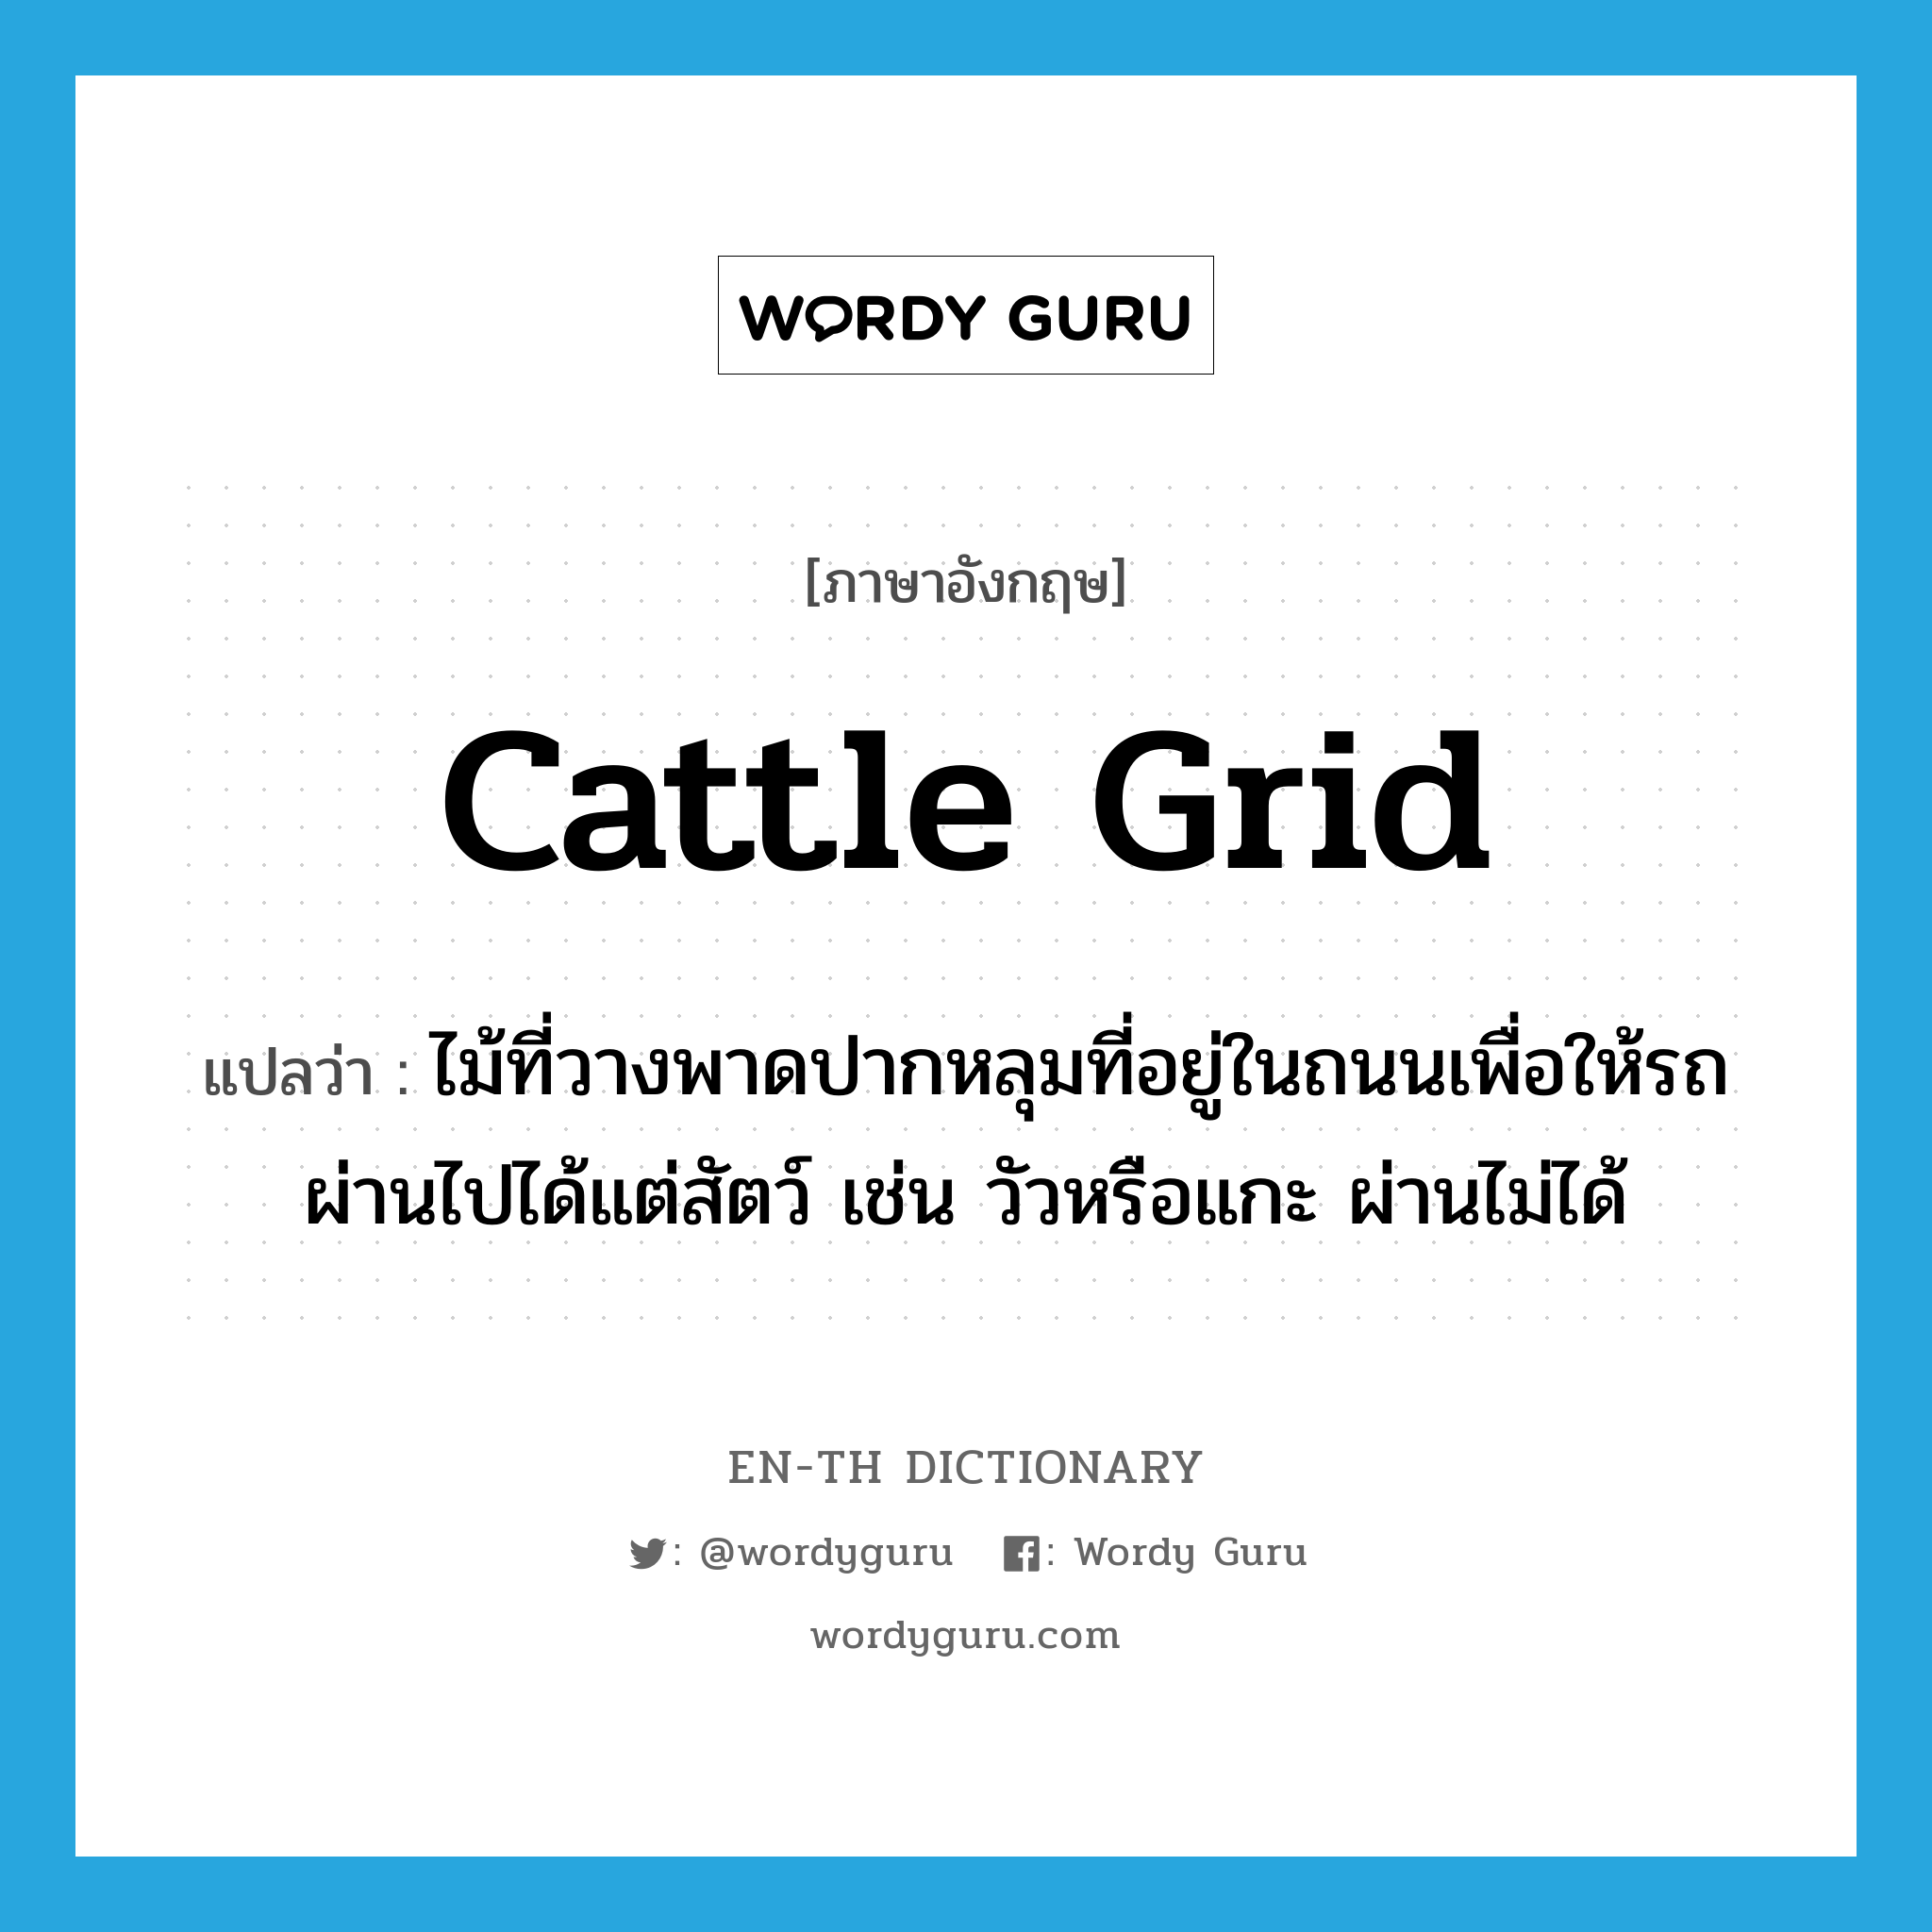 cattle grid แปลว่า?, คำศัพท์ภาษาอังกฤษ cattle grid แปลว่า ไม้ที่วางพาดปากหลุมที่อยู่ในถนนเพื่อให้รถผ่านไปได้แต่สัตว์ เช่น วัวหรือแกะ ผ่านไม่ได้ ประเภท N หมวด N